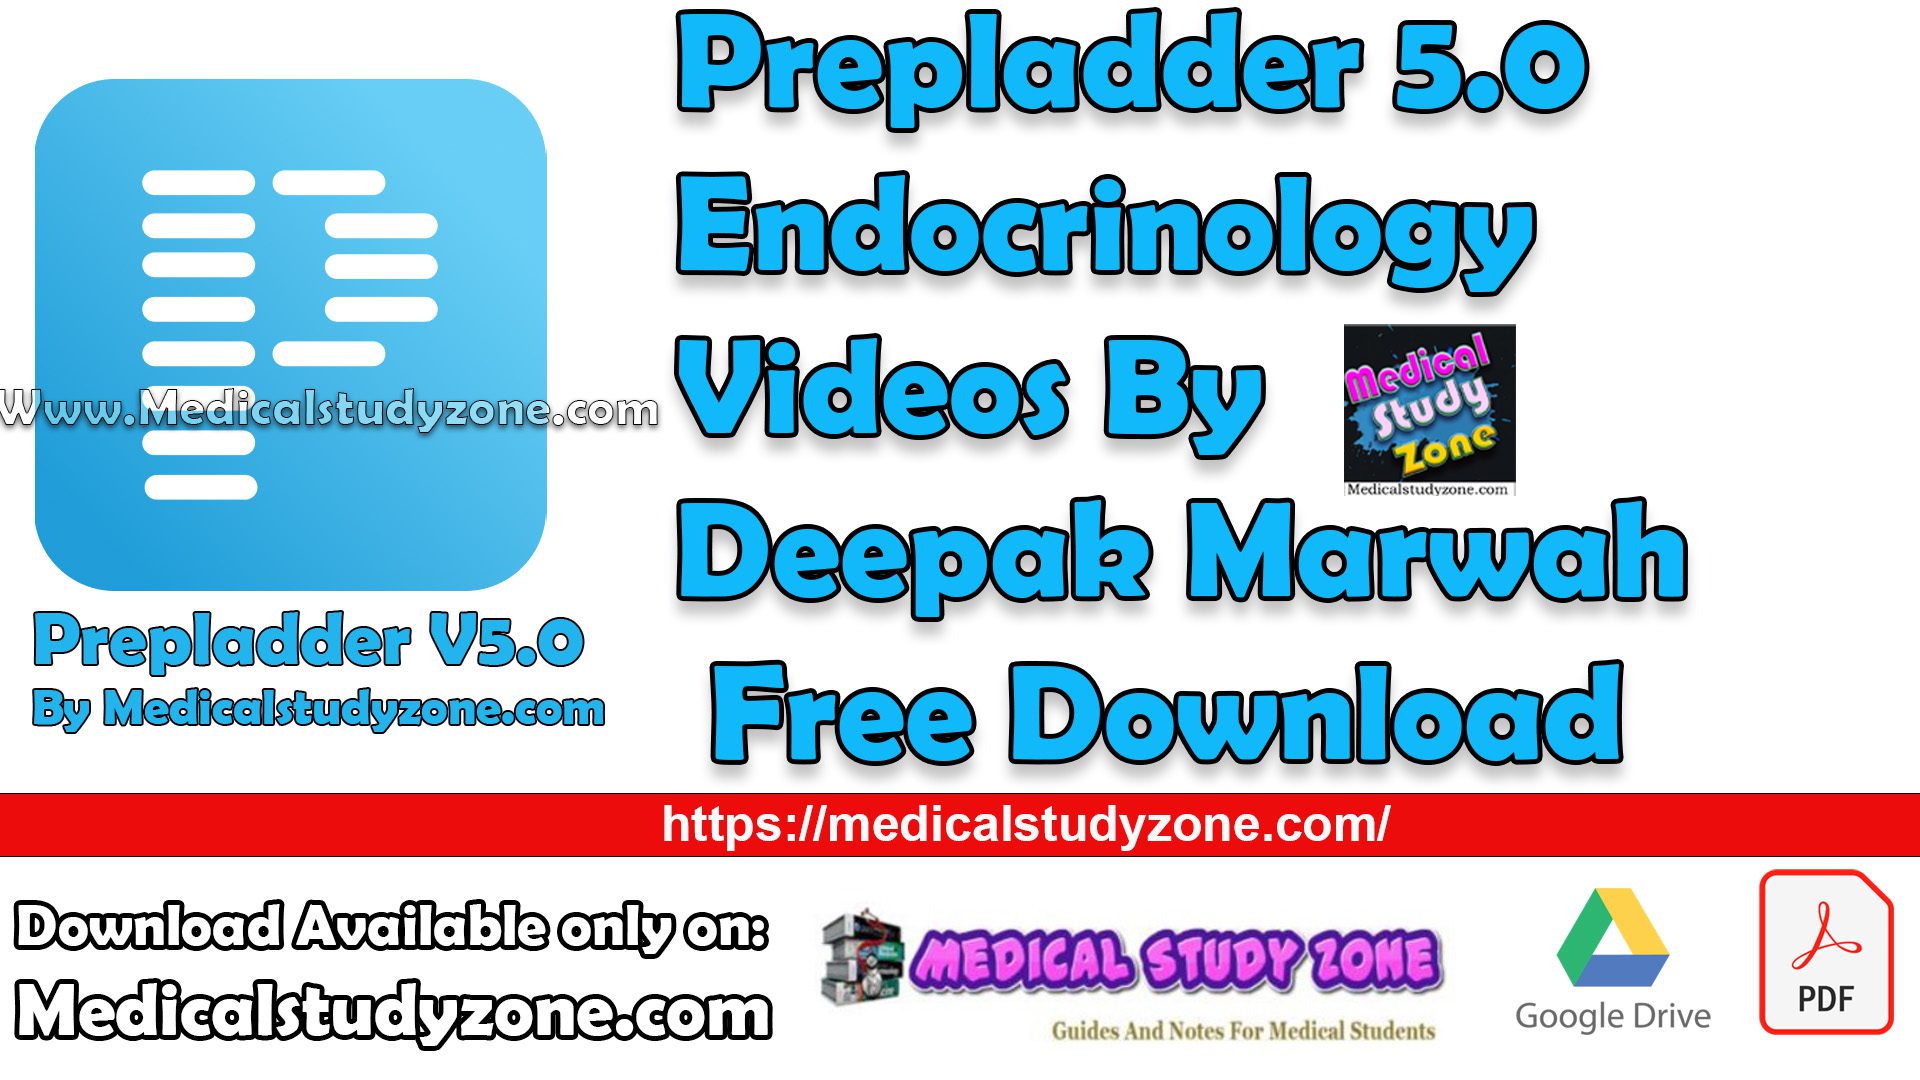 Prepladder 5.0 Endocrinology Videos By Deepak Marwah Free Download